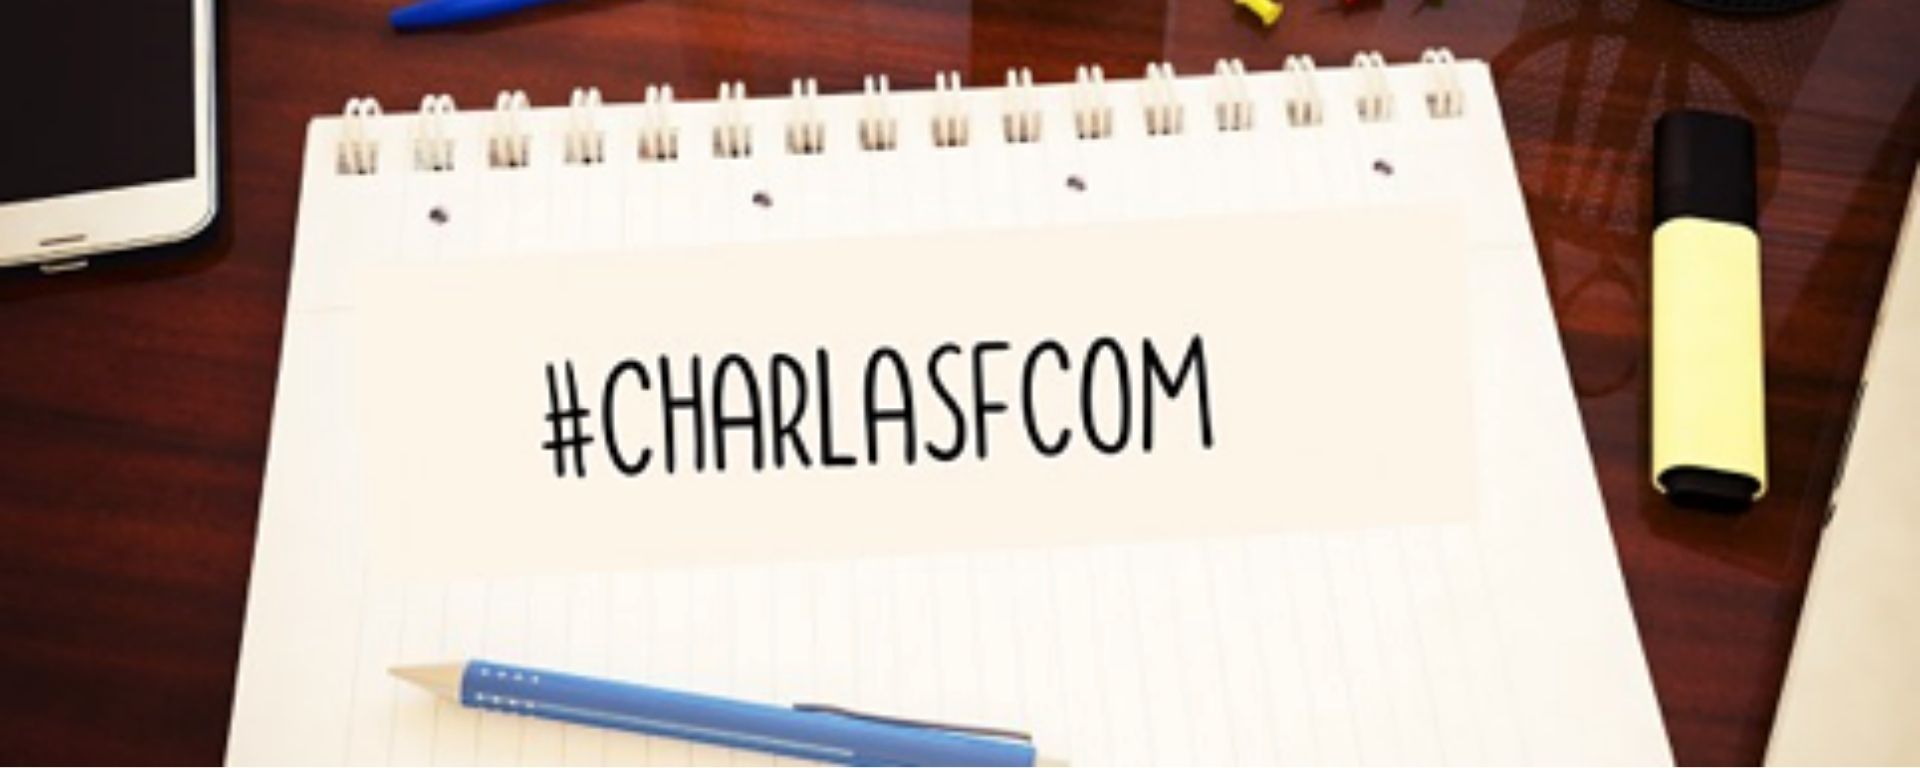 Frase "#CharlasFCOM" en un bloc de hojas